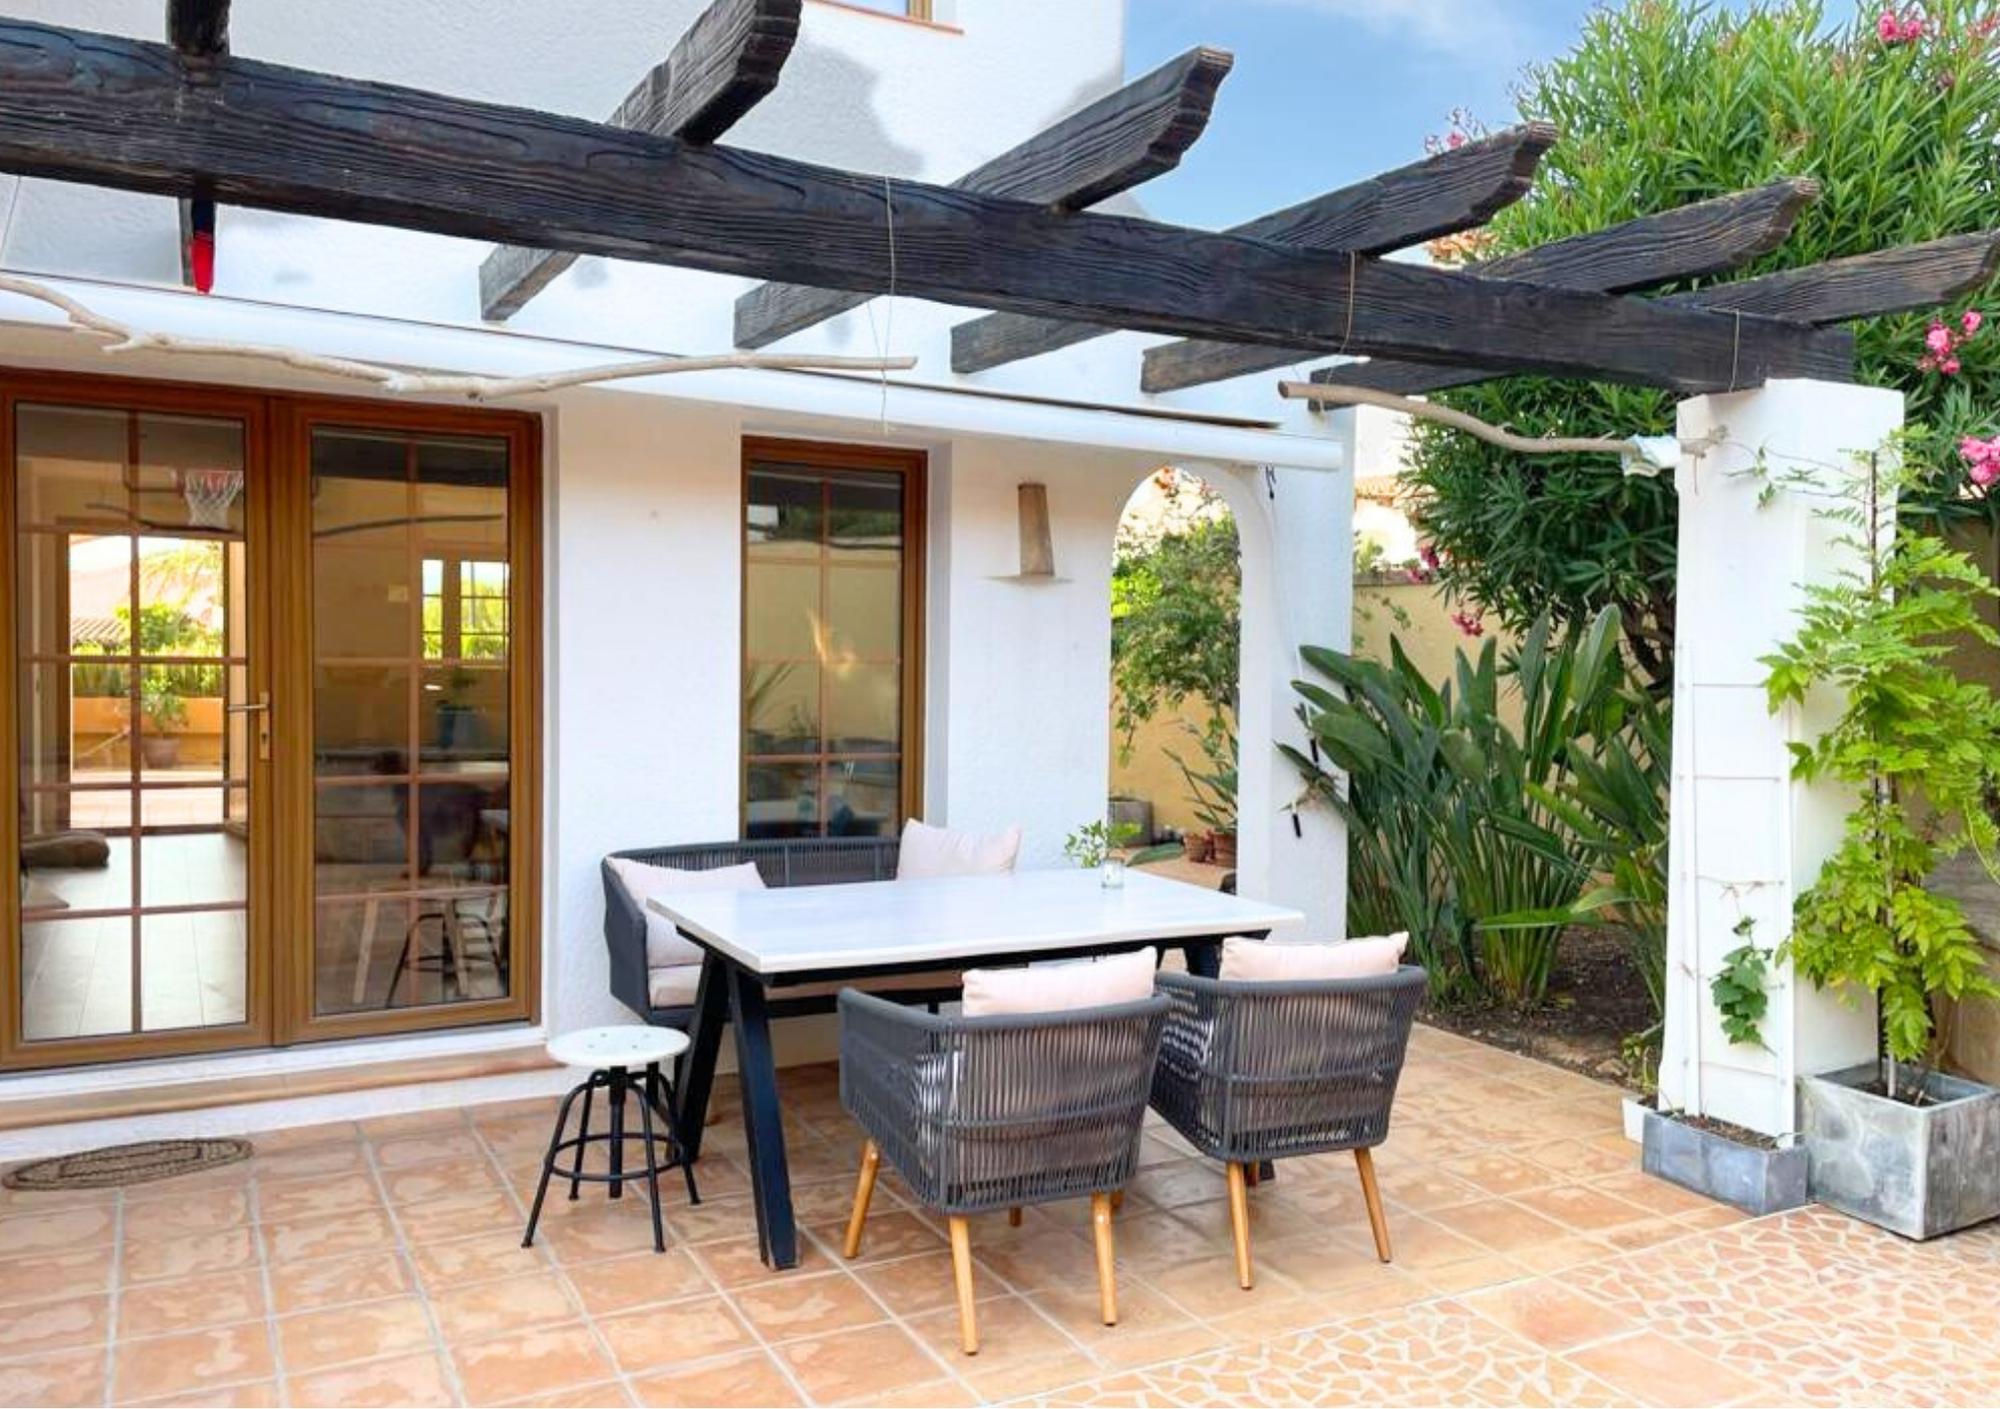 Villa in Santa Ponsa - Terrasse mit Zugang zum offen gestalteten Wohn-/Essbereich mit Küche